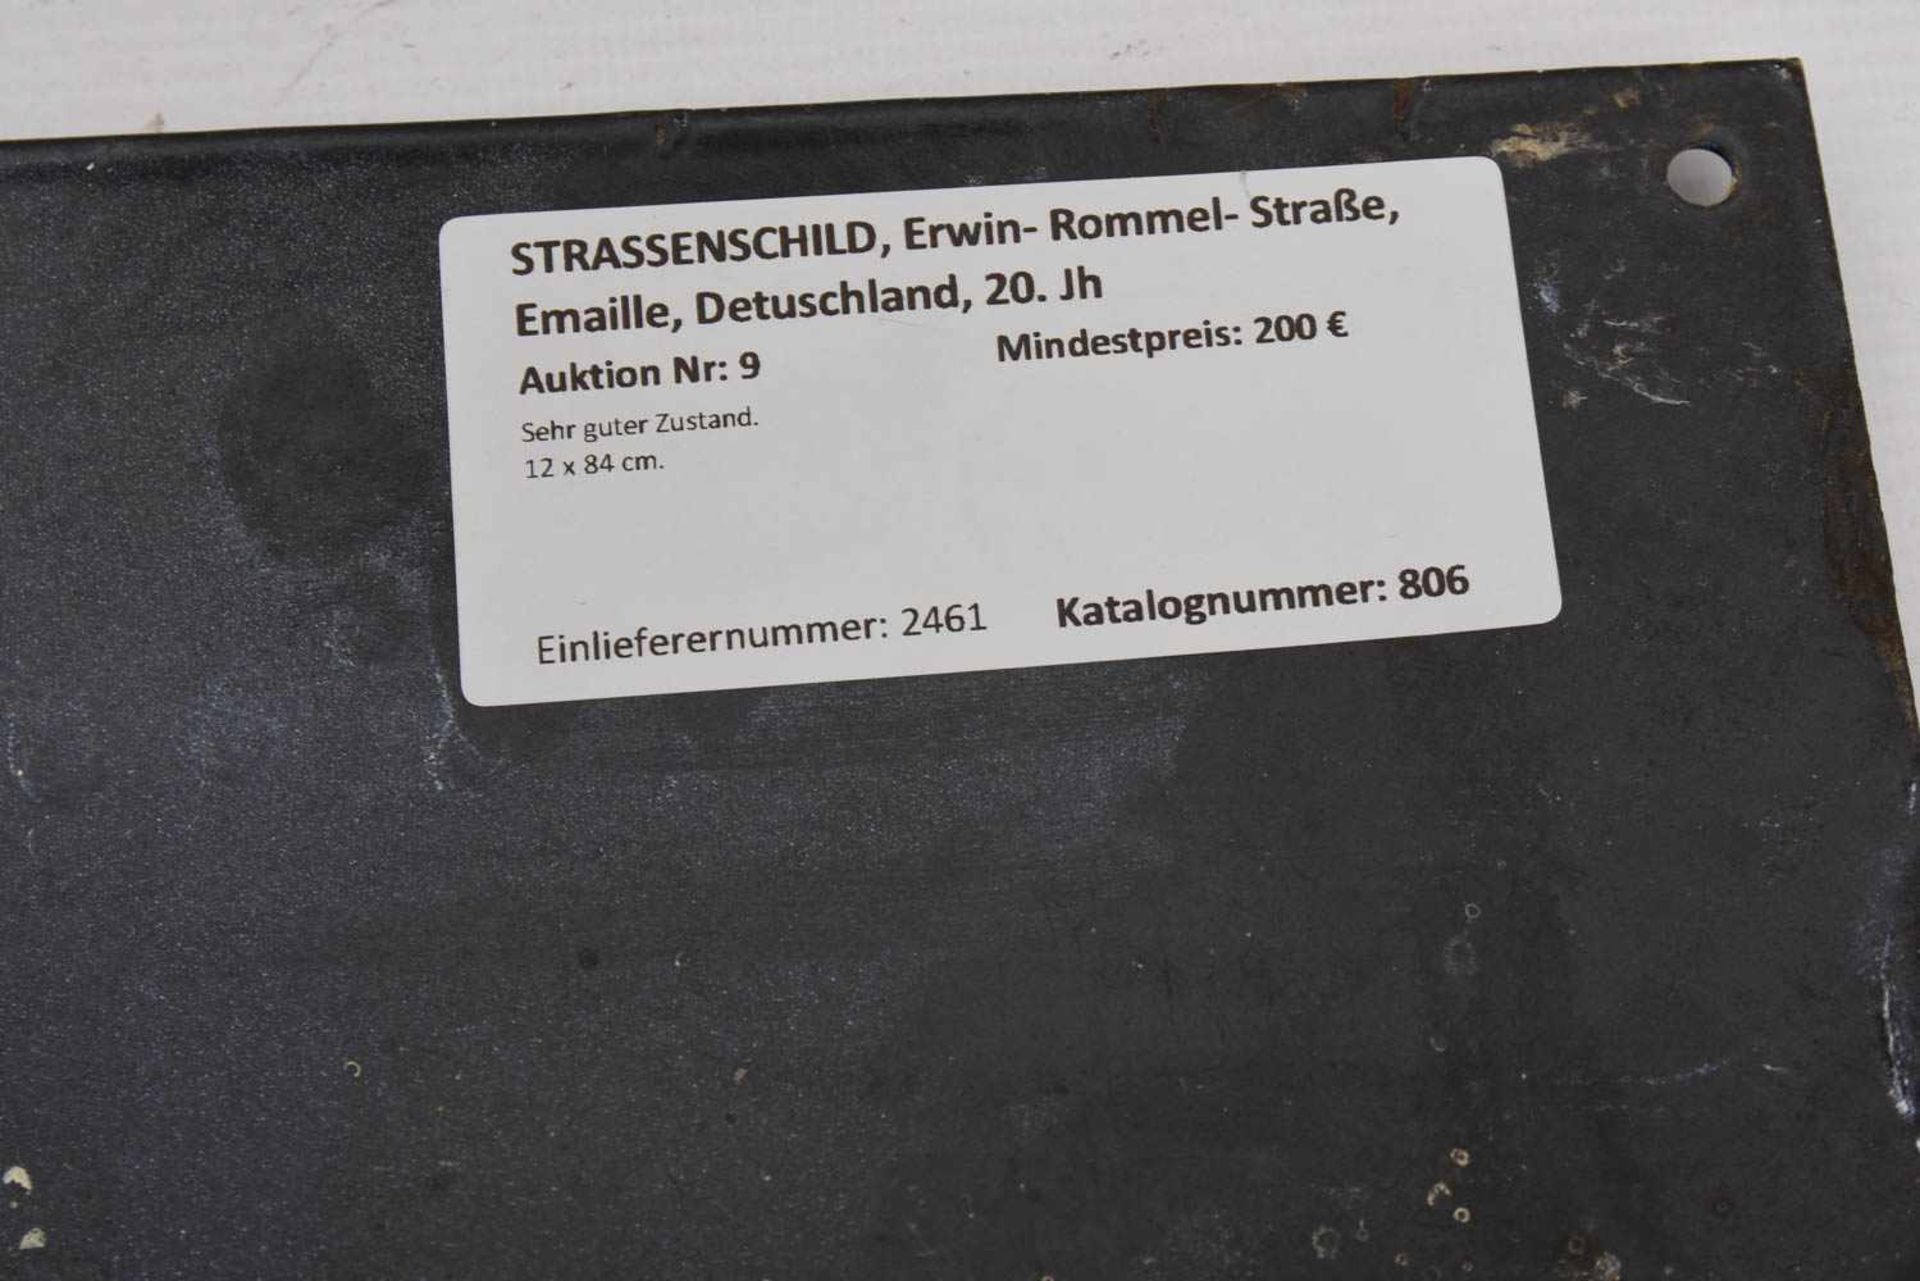 STRASSENSCHILD, Erwin- Rommel- Straße, Emaille, Detuschland, 20. JhSehr guter Zustand. 12 x 84 cm. - Image 3 of 3